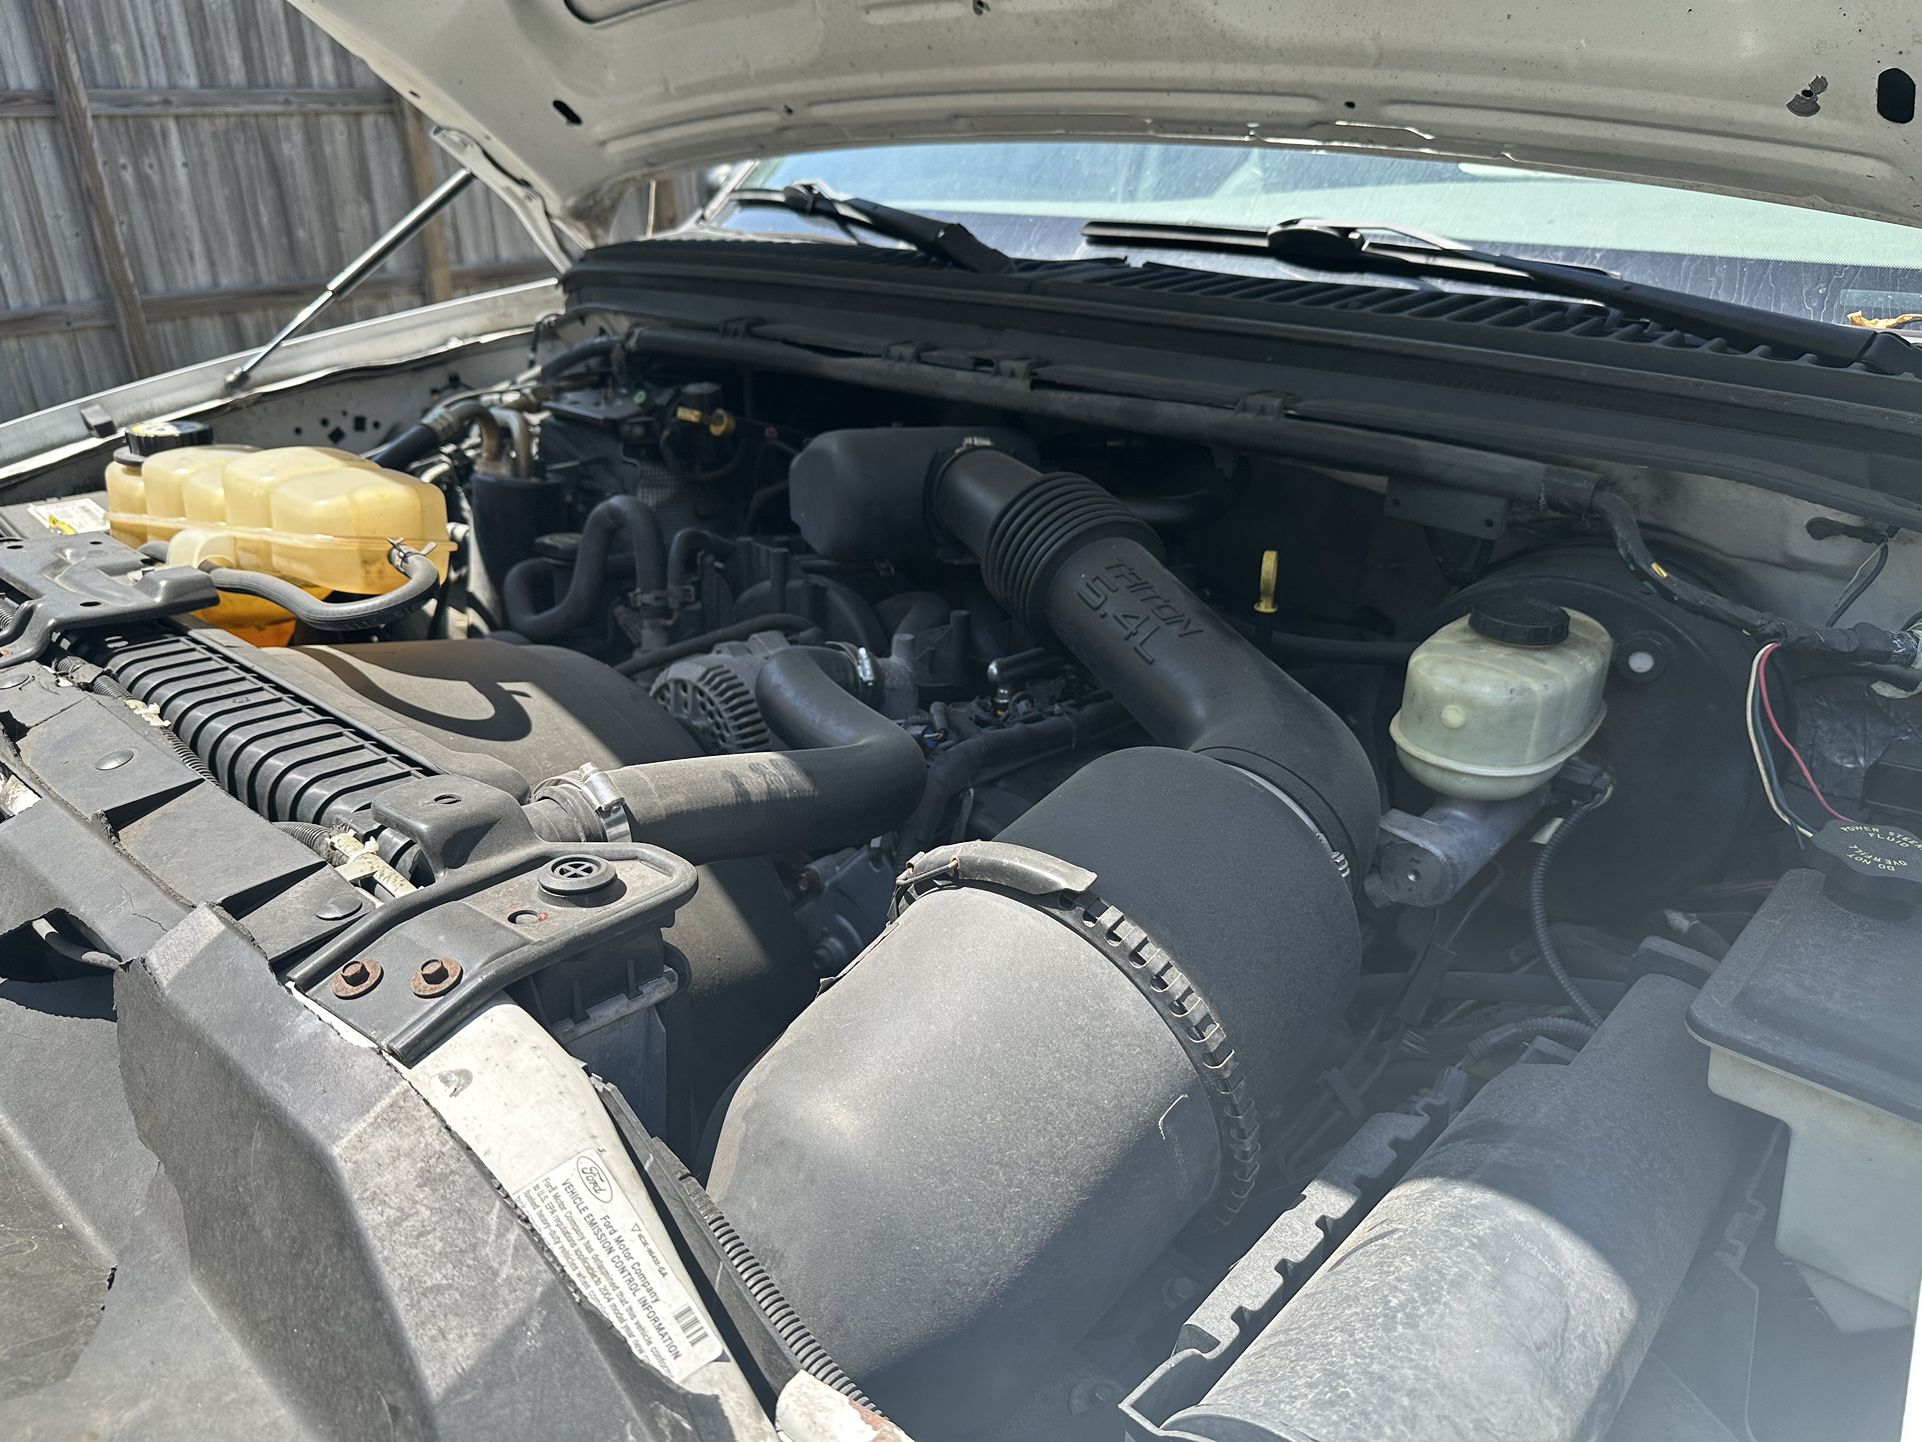 5.4 V8 Ford Engine 